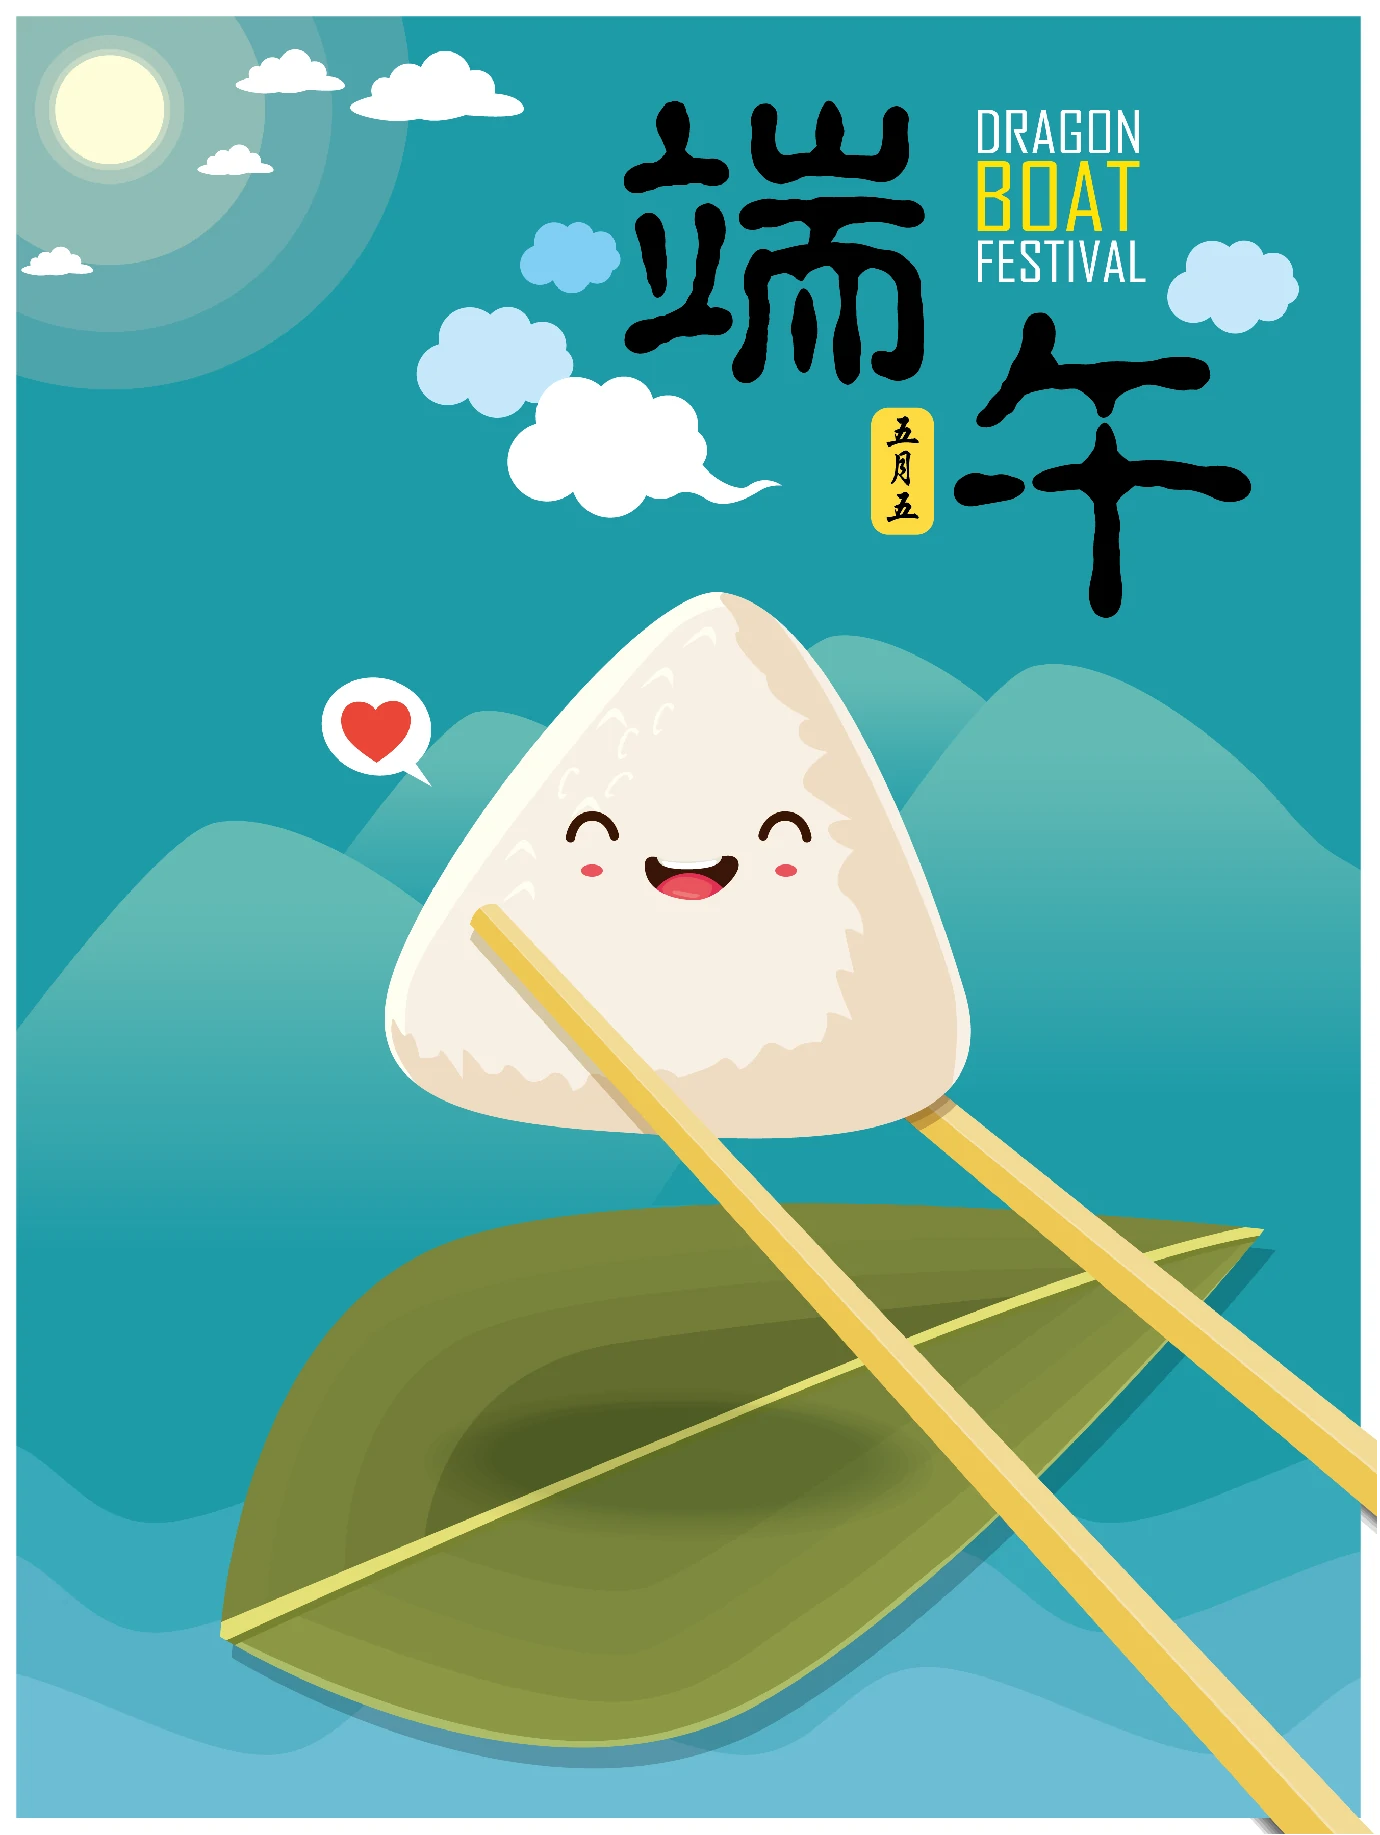 中国传统节日卡通手绘端午节赛龙舟粽子插画海报AI矢量设计素材【056】